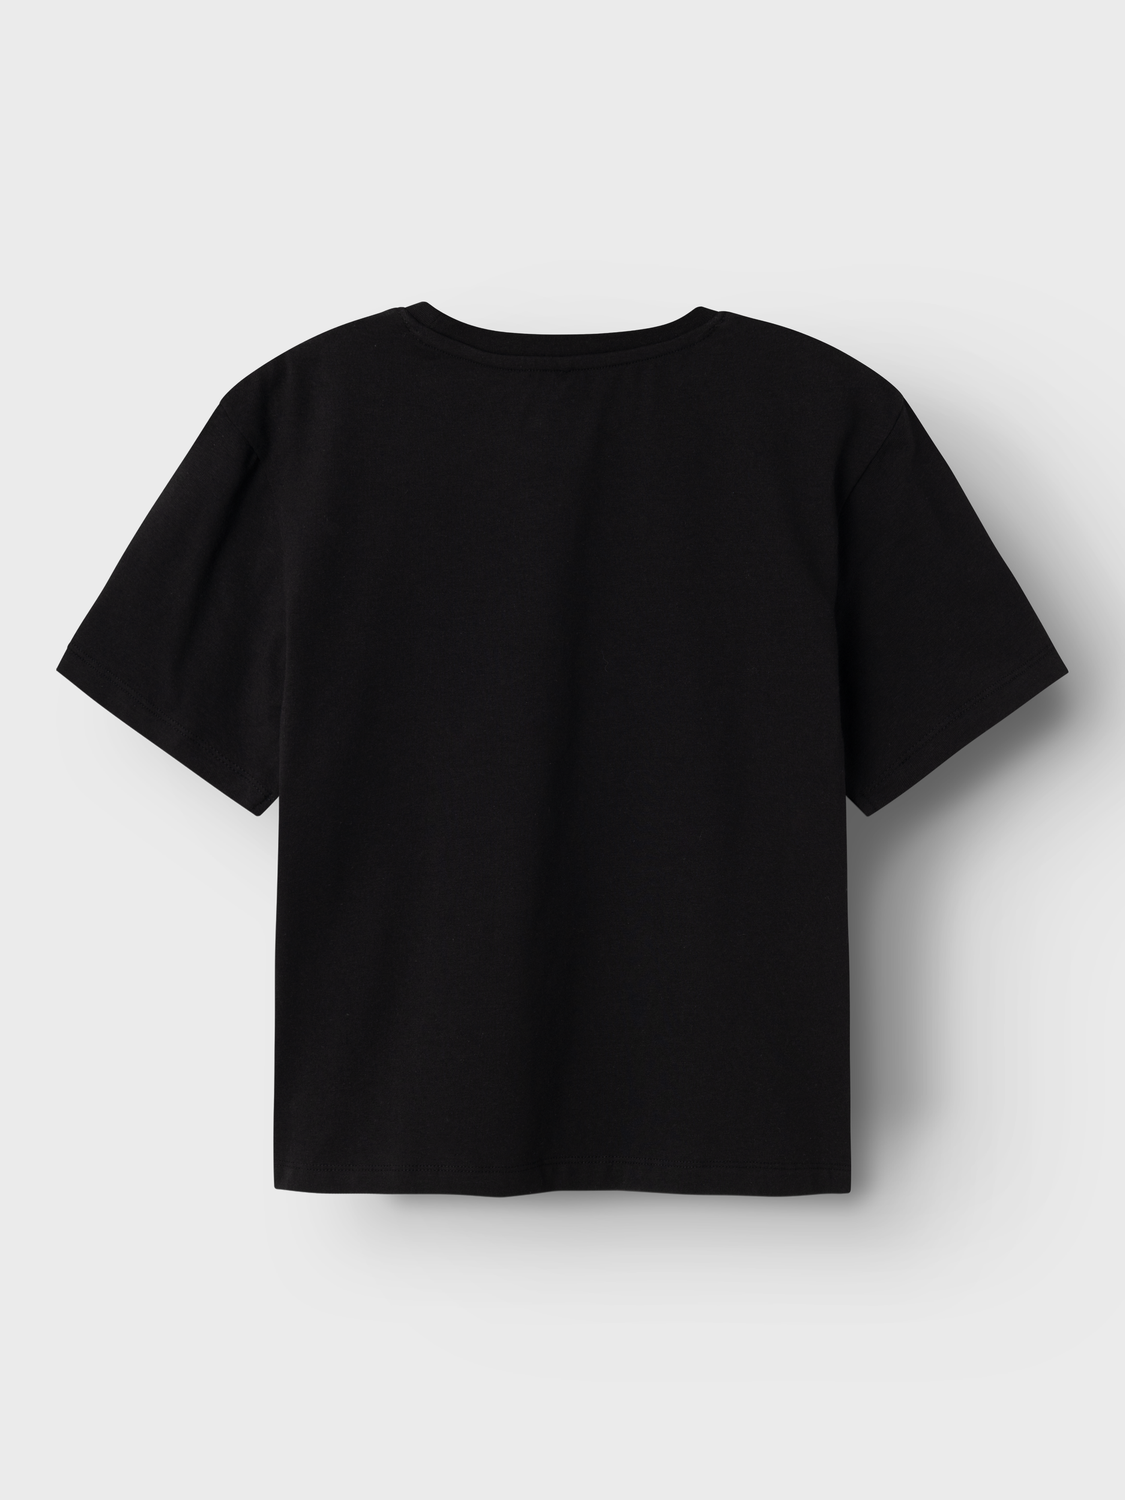 NKFDALINA T-Shirts & Tops - Black